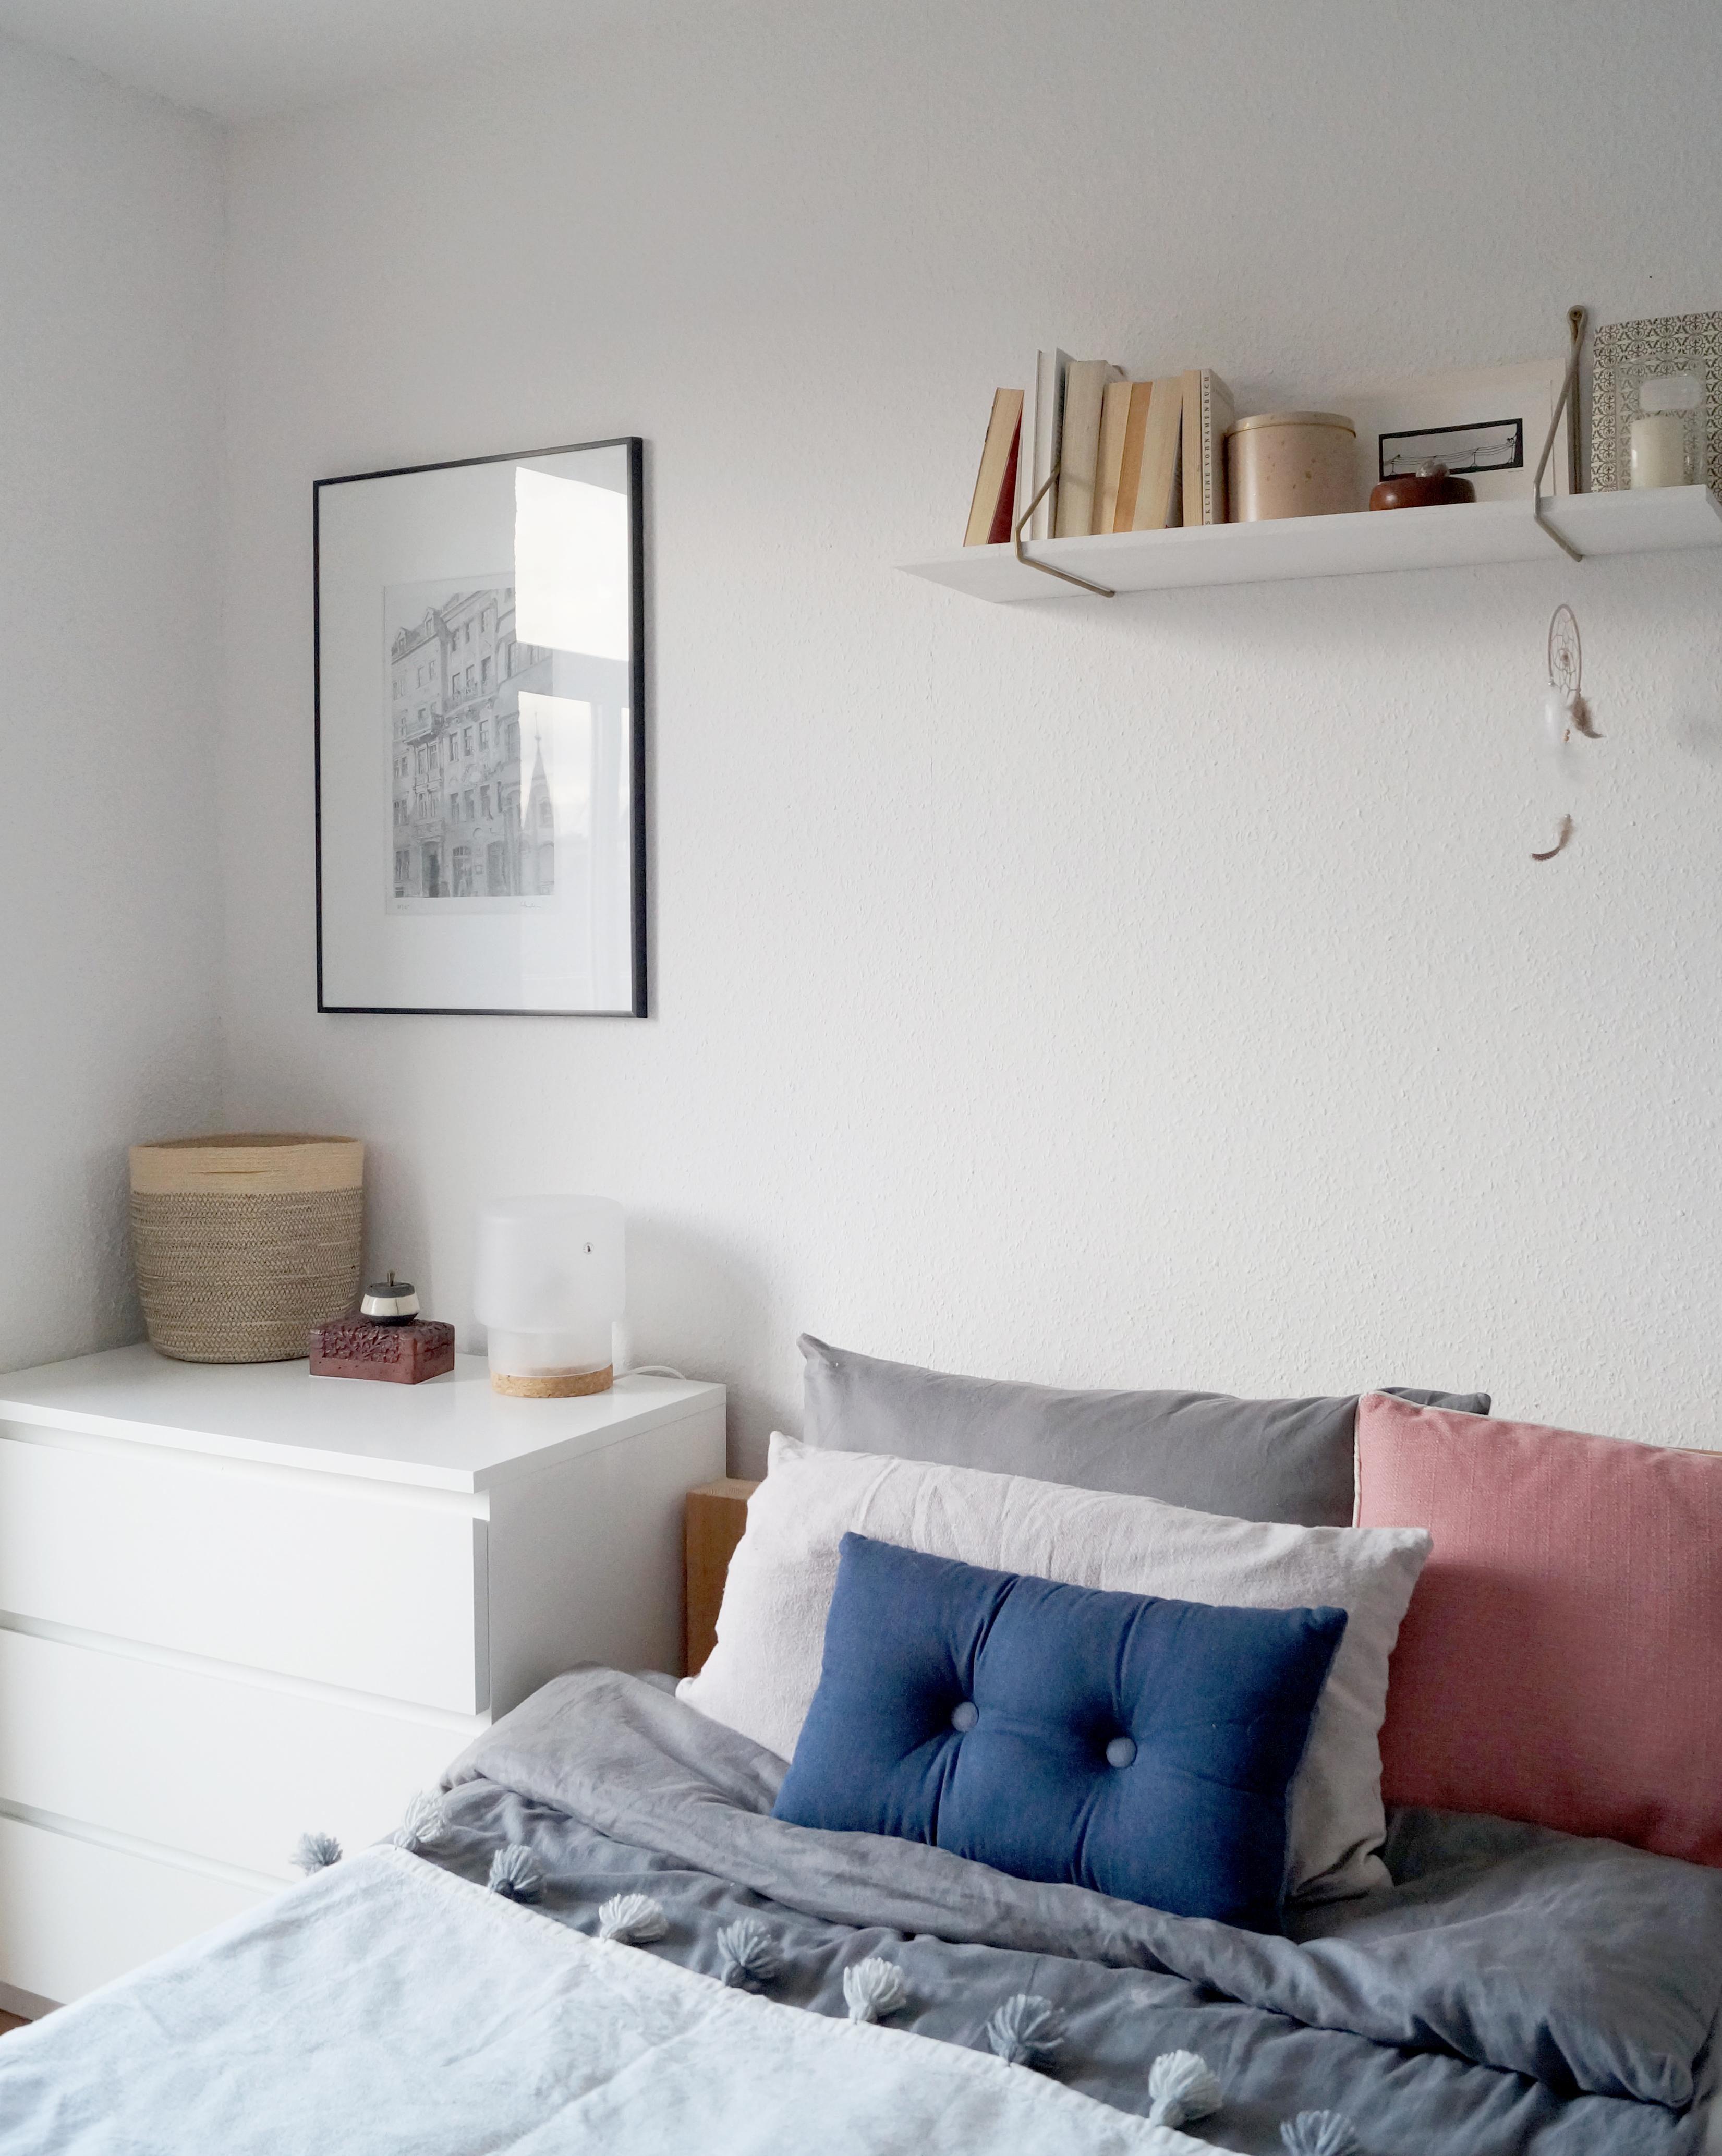 #bedroom #altbau #scandinavian #minimalism